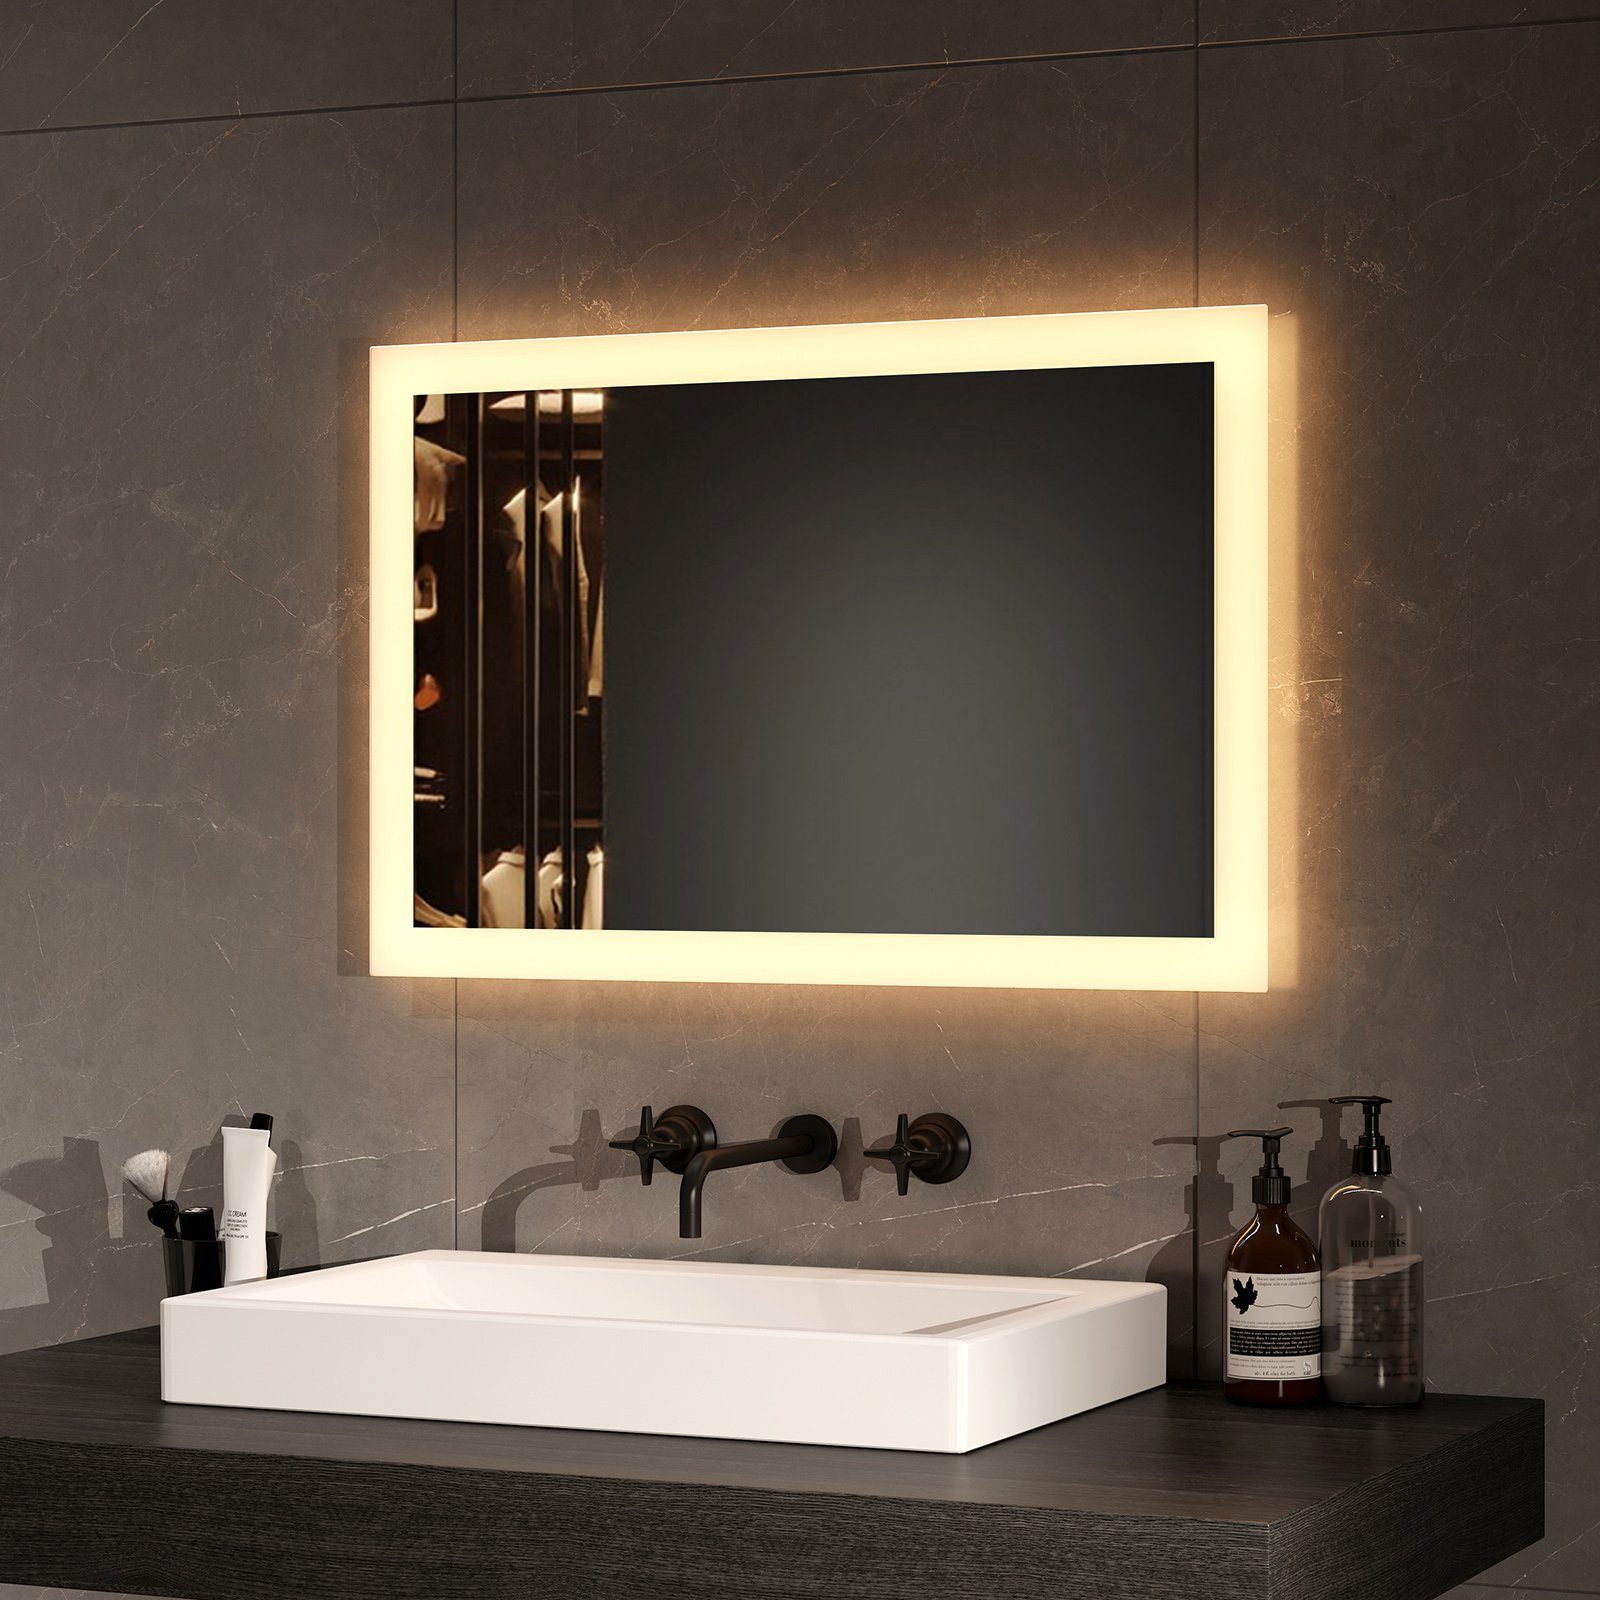 EMKE Badspiegel Badezimmerspiegel LED Badspiegel mit beleuchtung Wandspiegel (Wandschalter, Vertikal und Horizontal möglich), mit Warmweiß Licht 3000K IP44